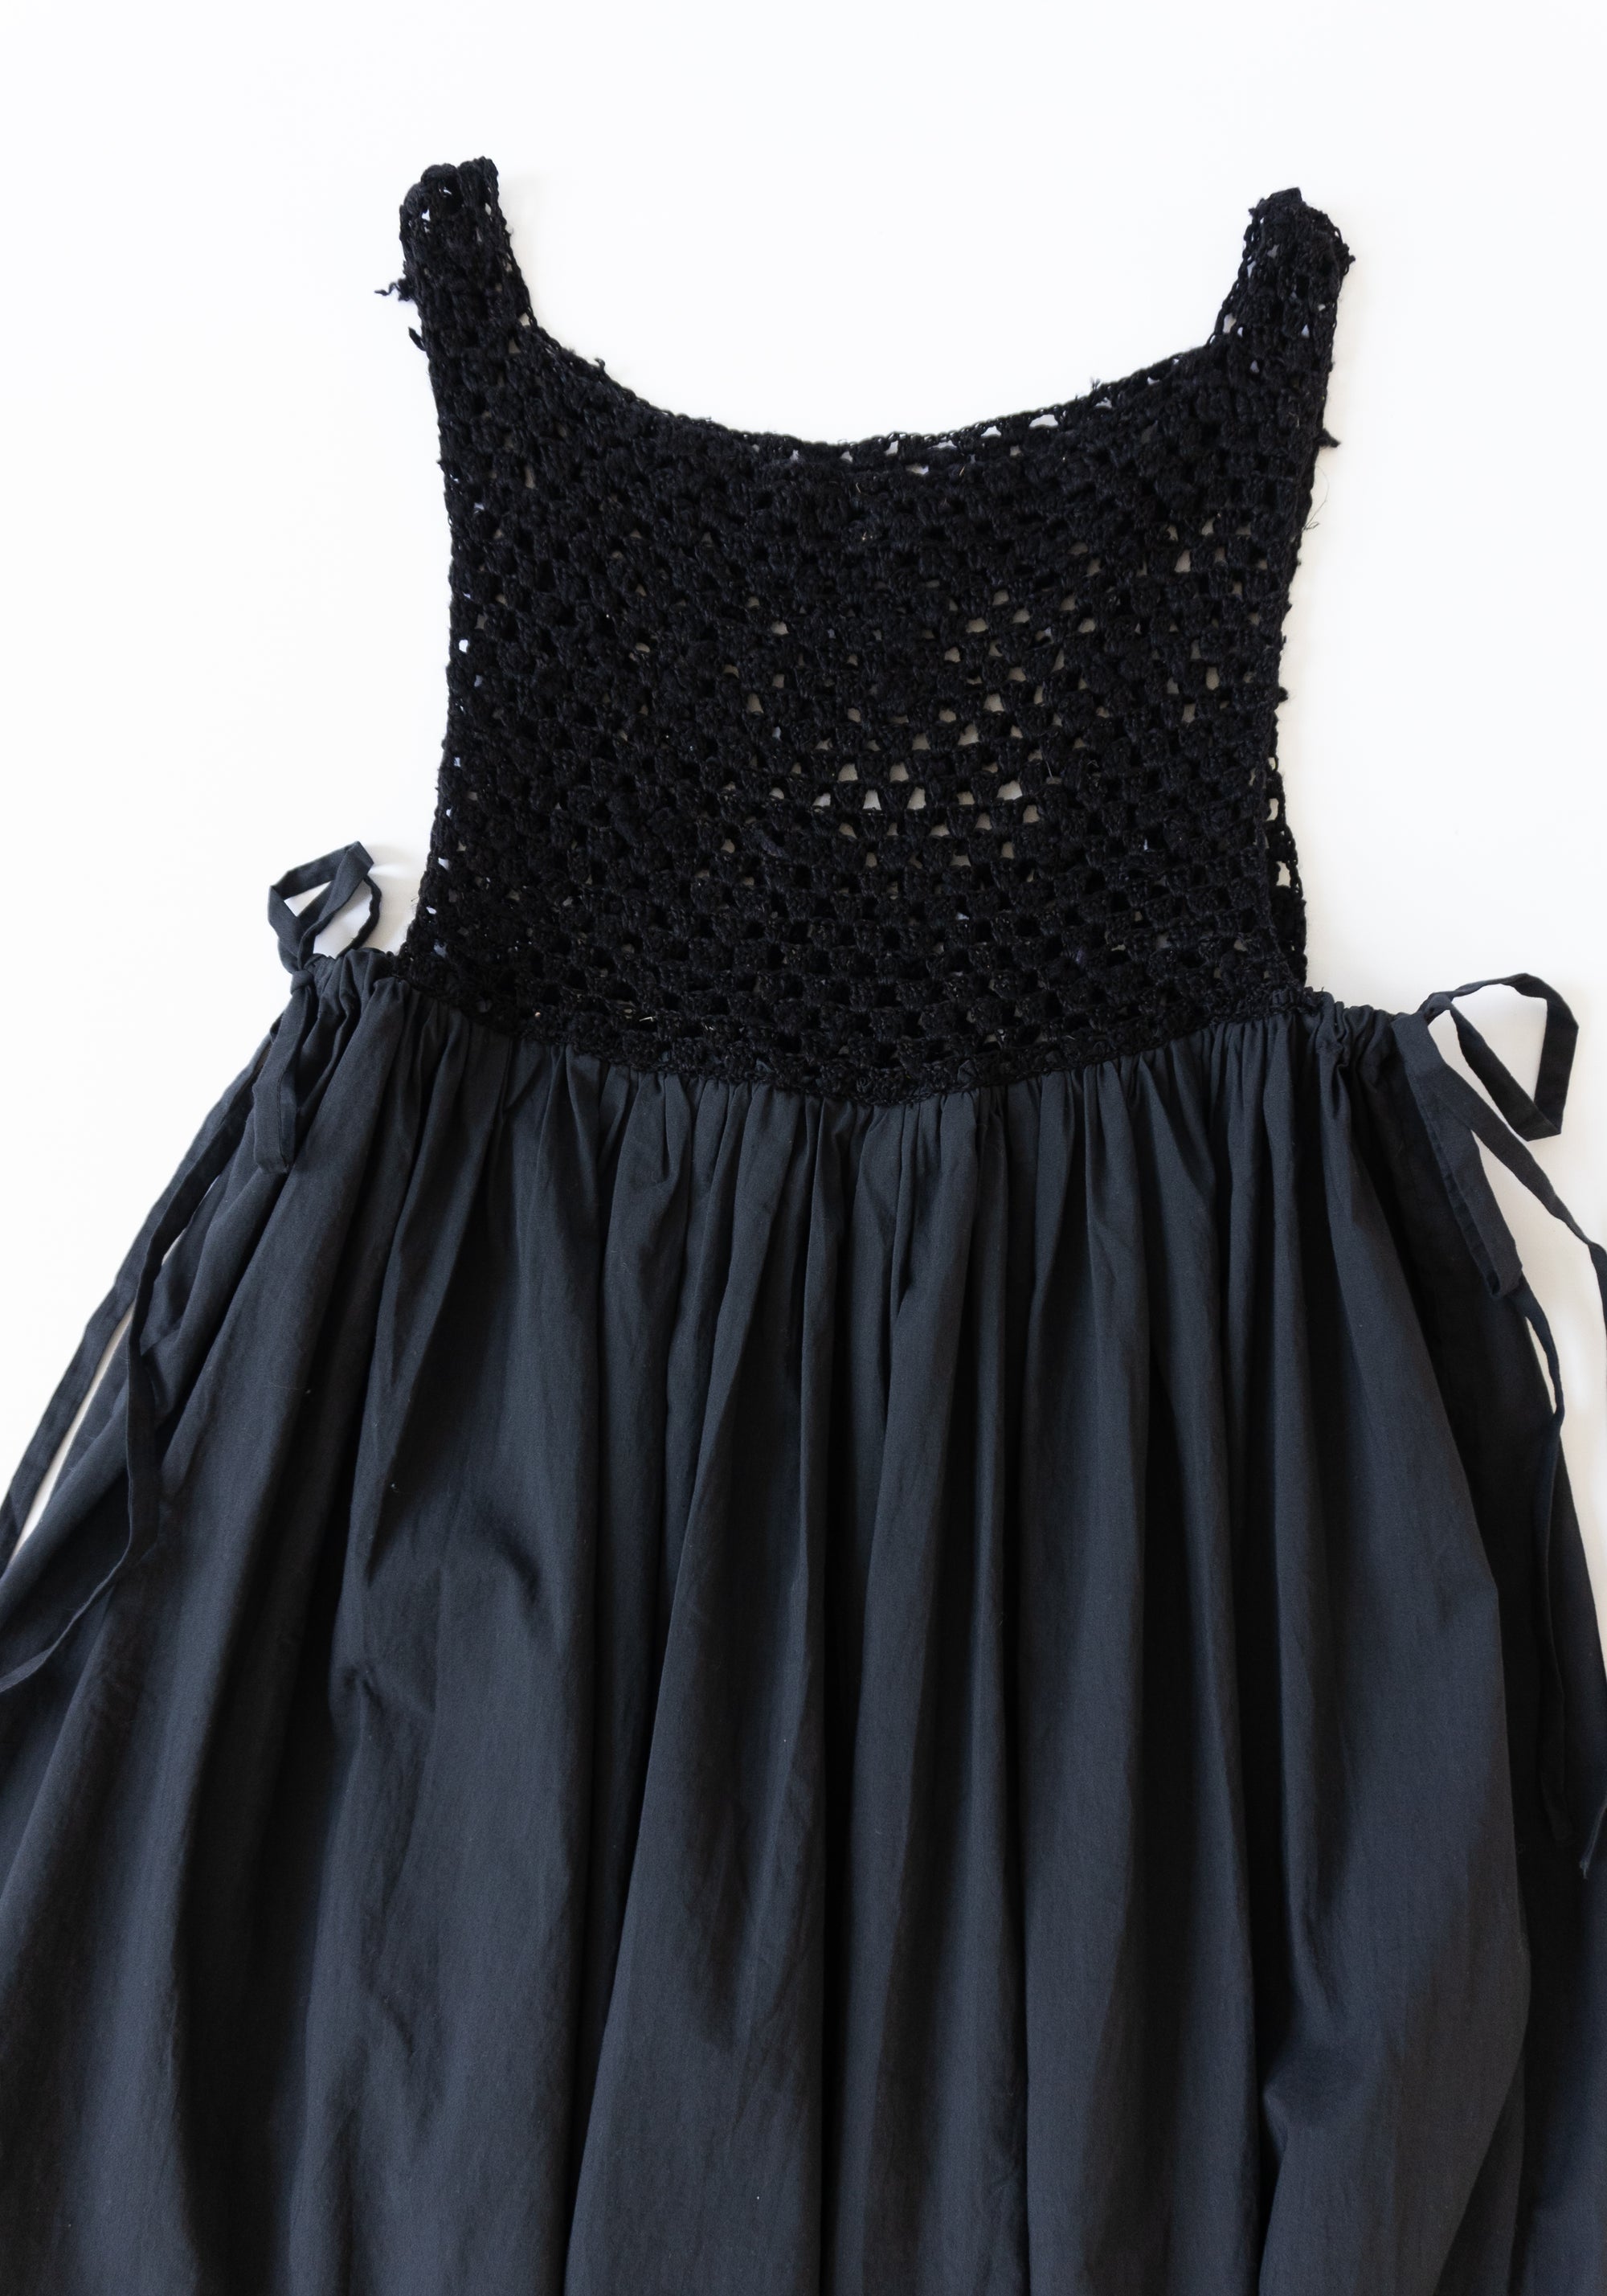 Tijolino Dress in Black